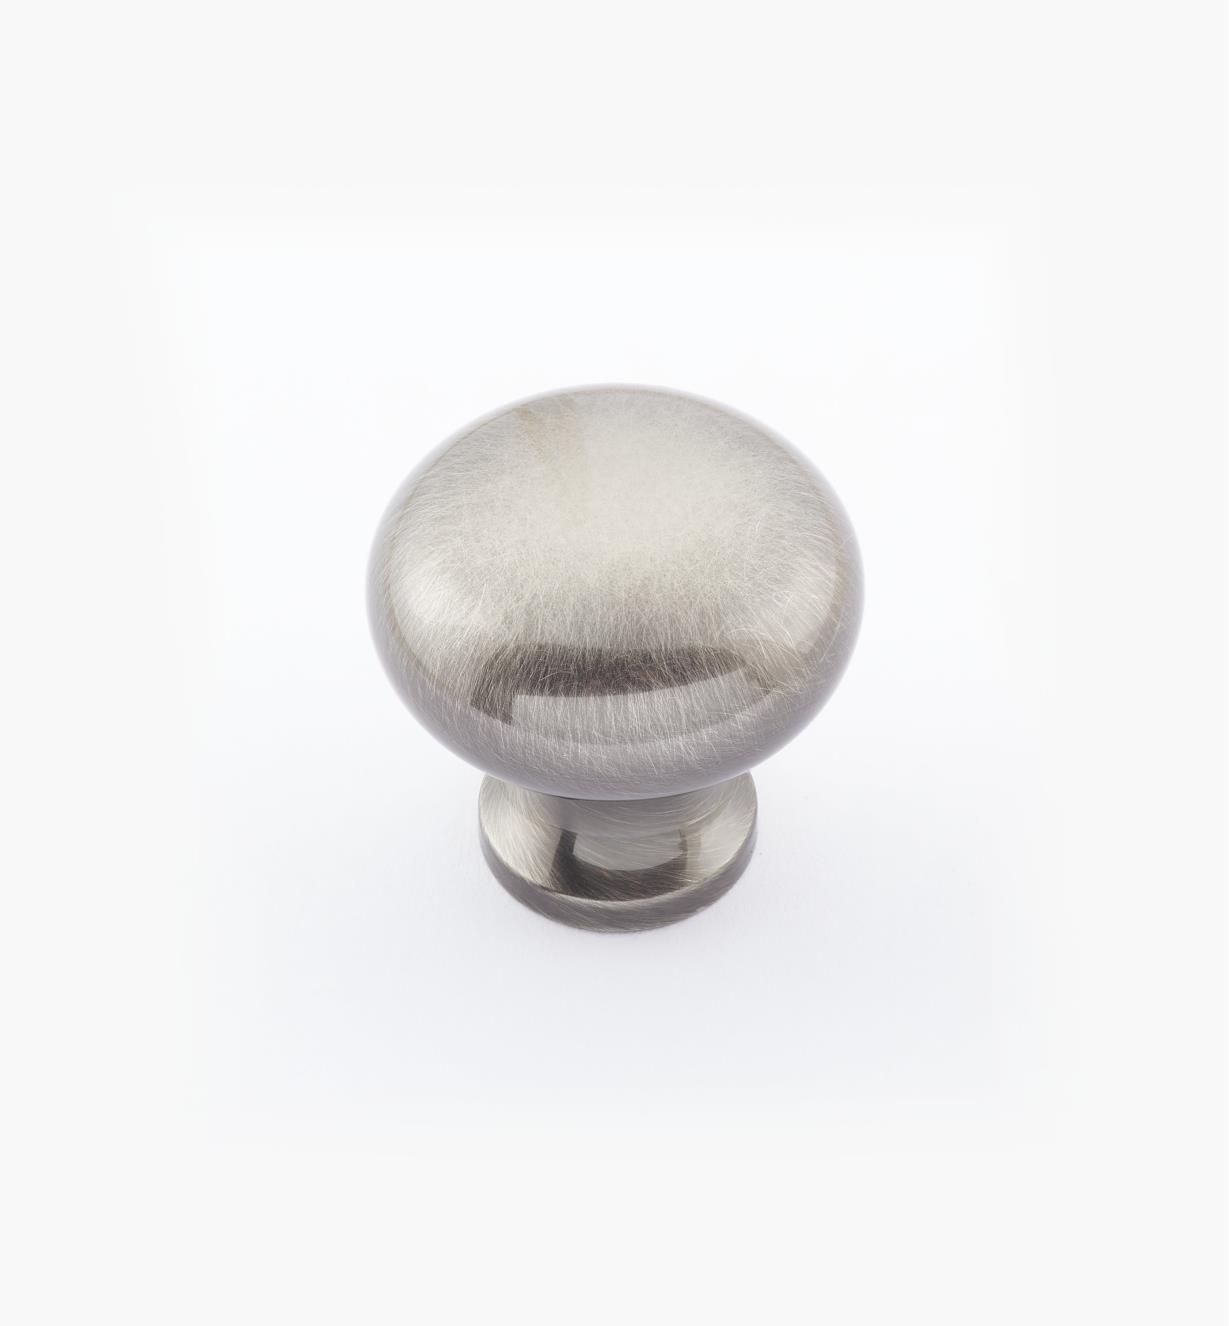 02W1433 - 1" × 1" Round Brass Knob, Antique Nickel 